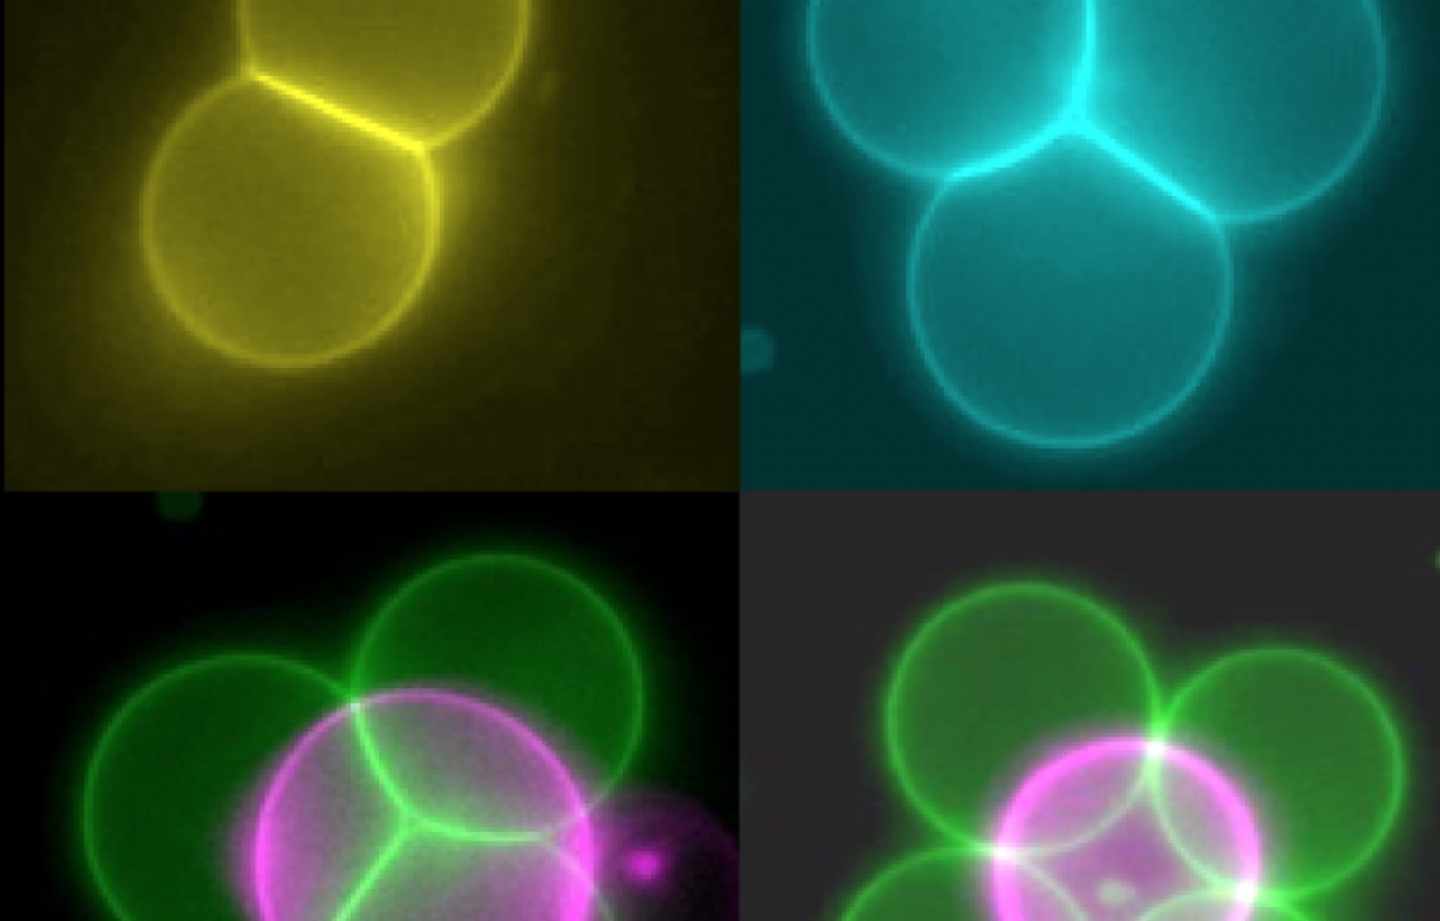 Células artificiales formando estructuras